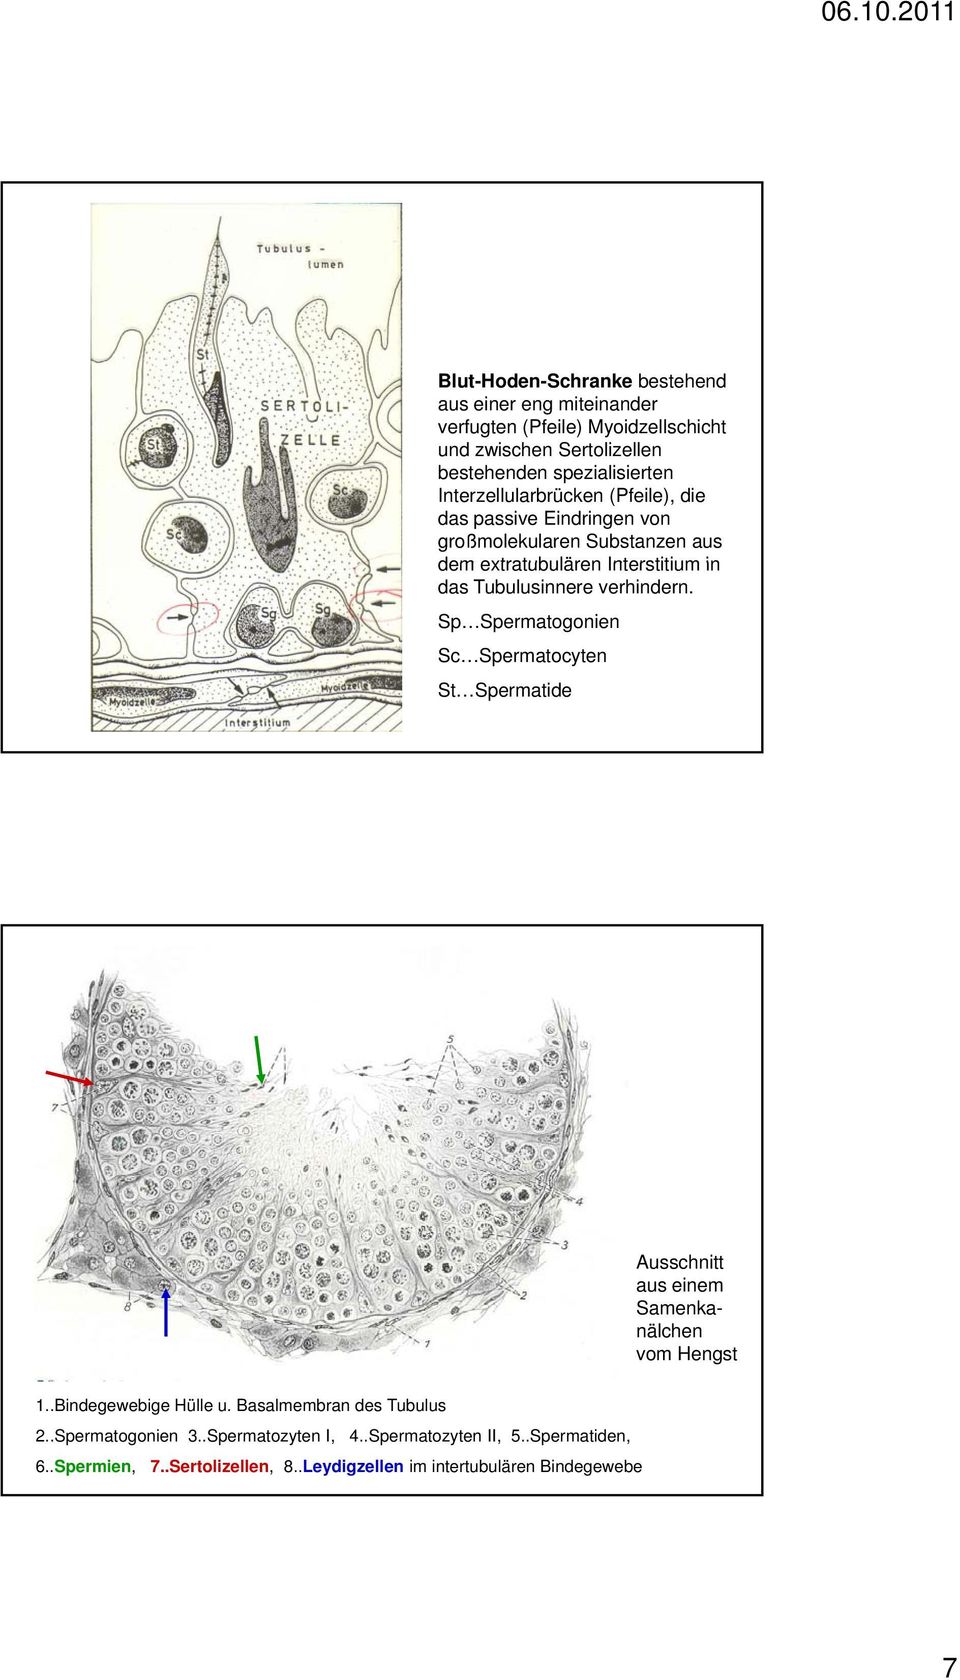 verhindern. Sp Spermatogonien Sc Spermatocyten St Spermatide Ausschnitt aus einem Samenkanälchen vom Hengst 1..Bindegewebige Hülle u.